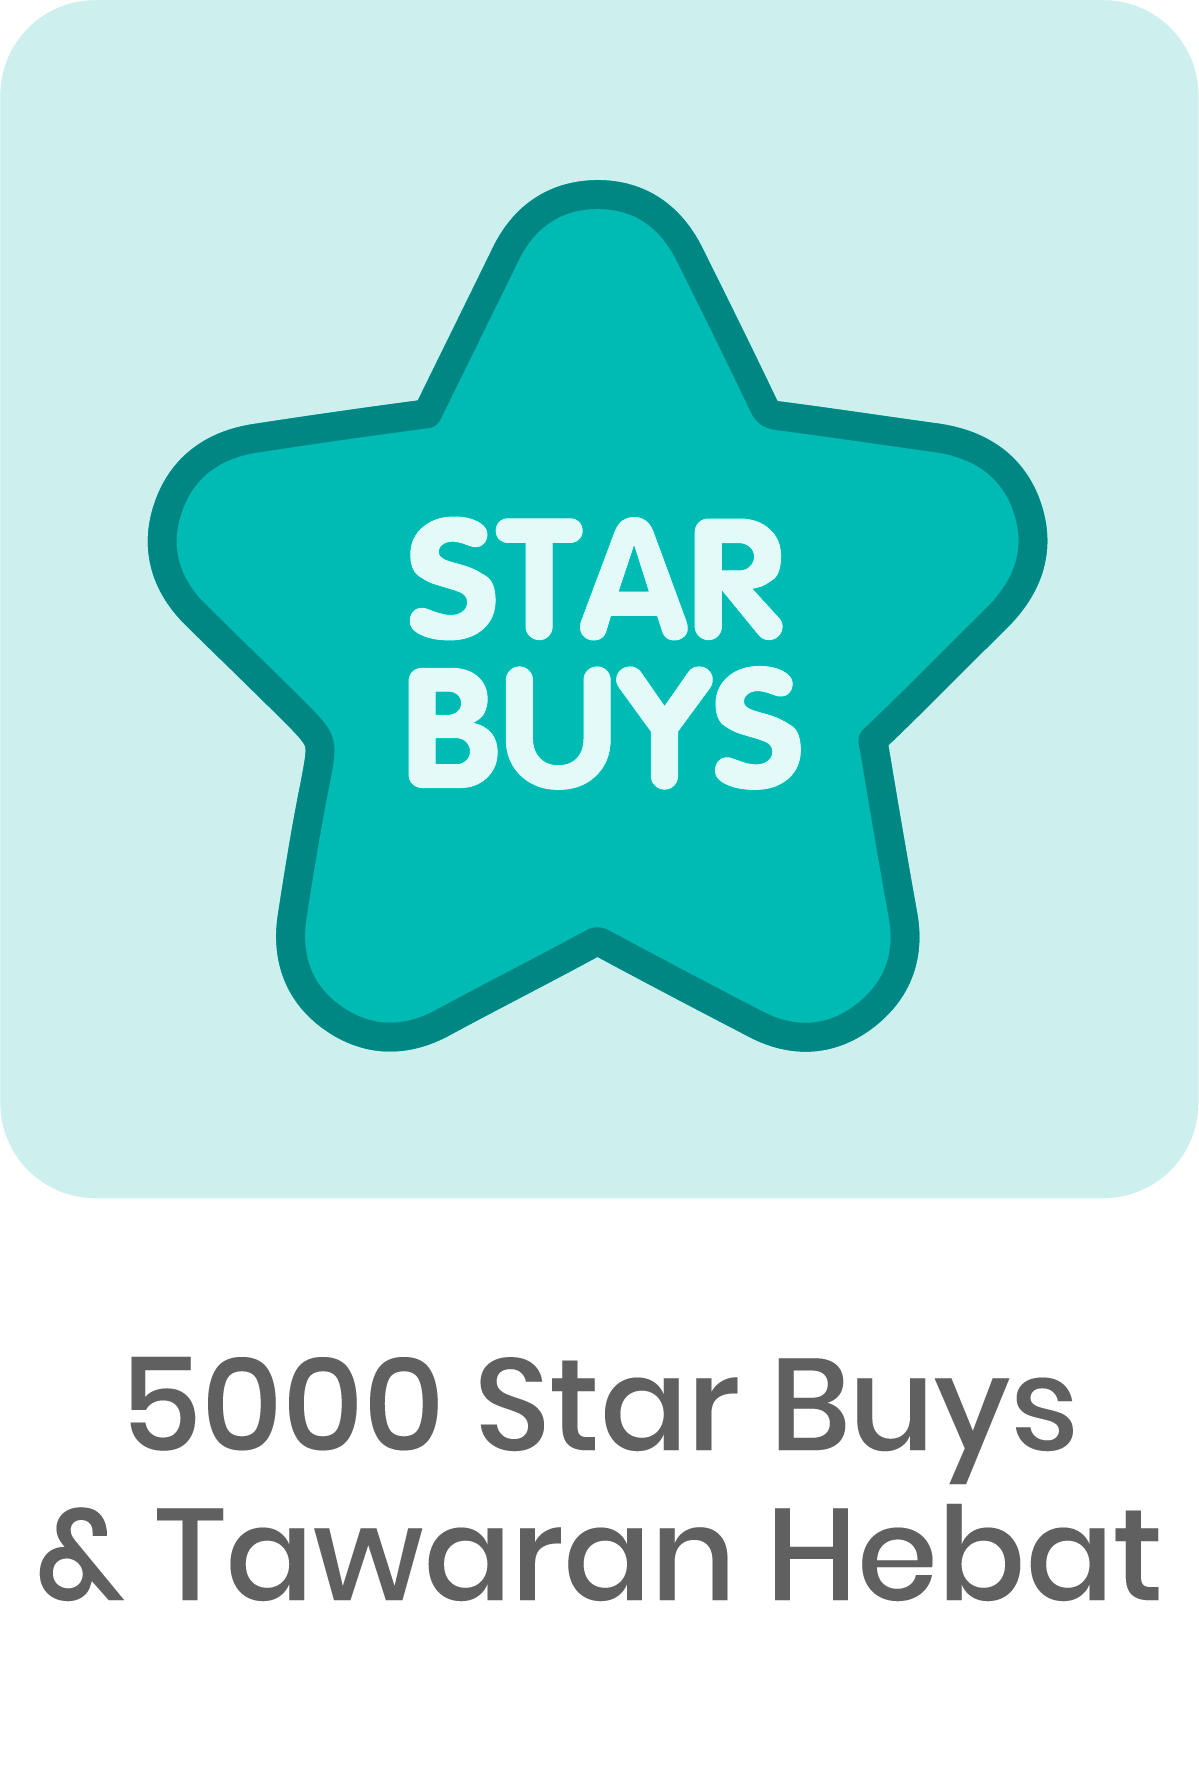 5000 Starbuy+ Great Deals